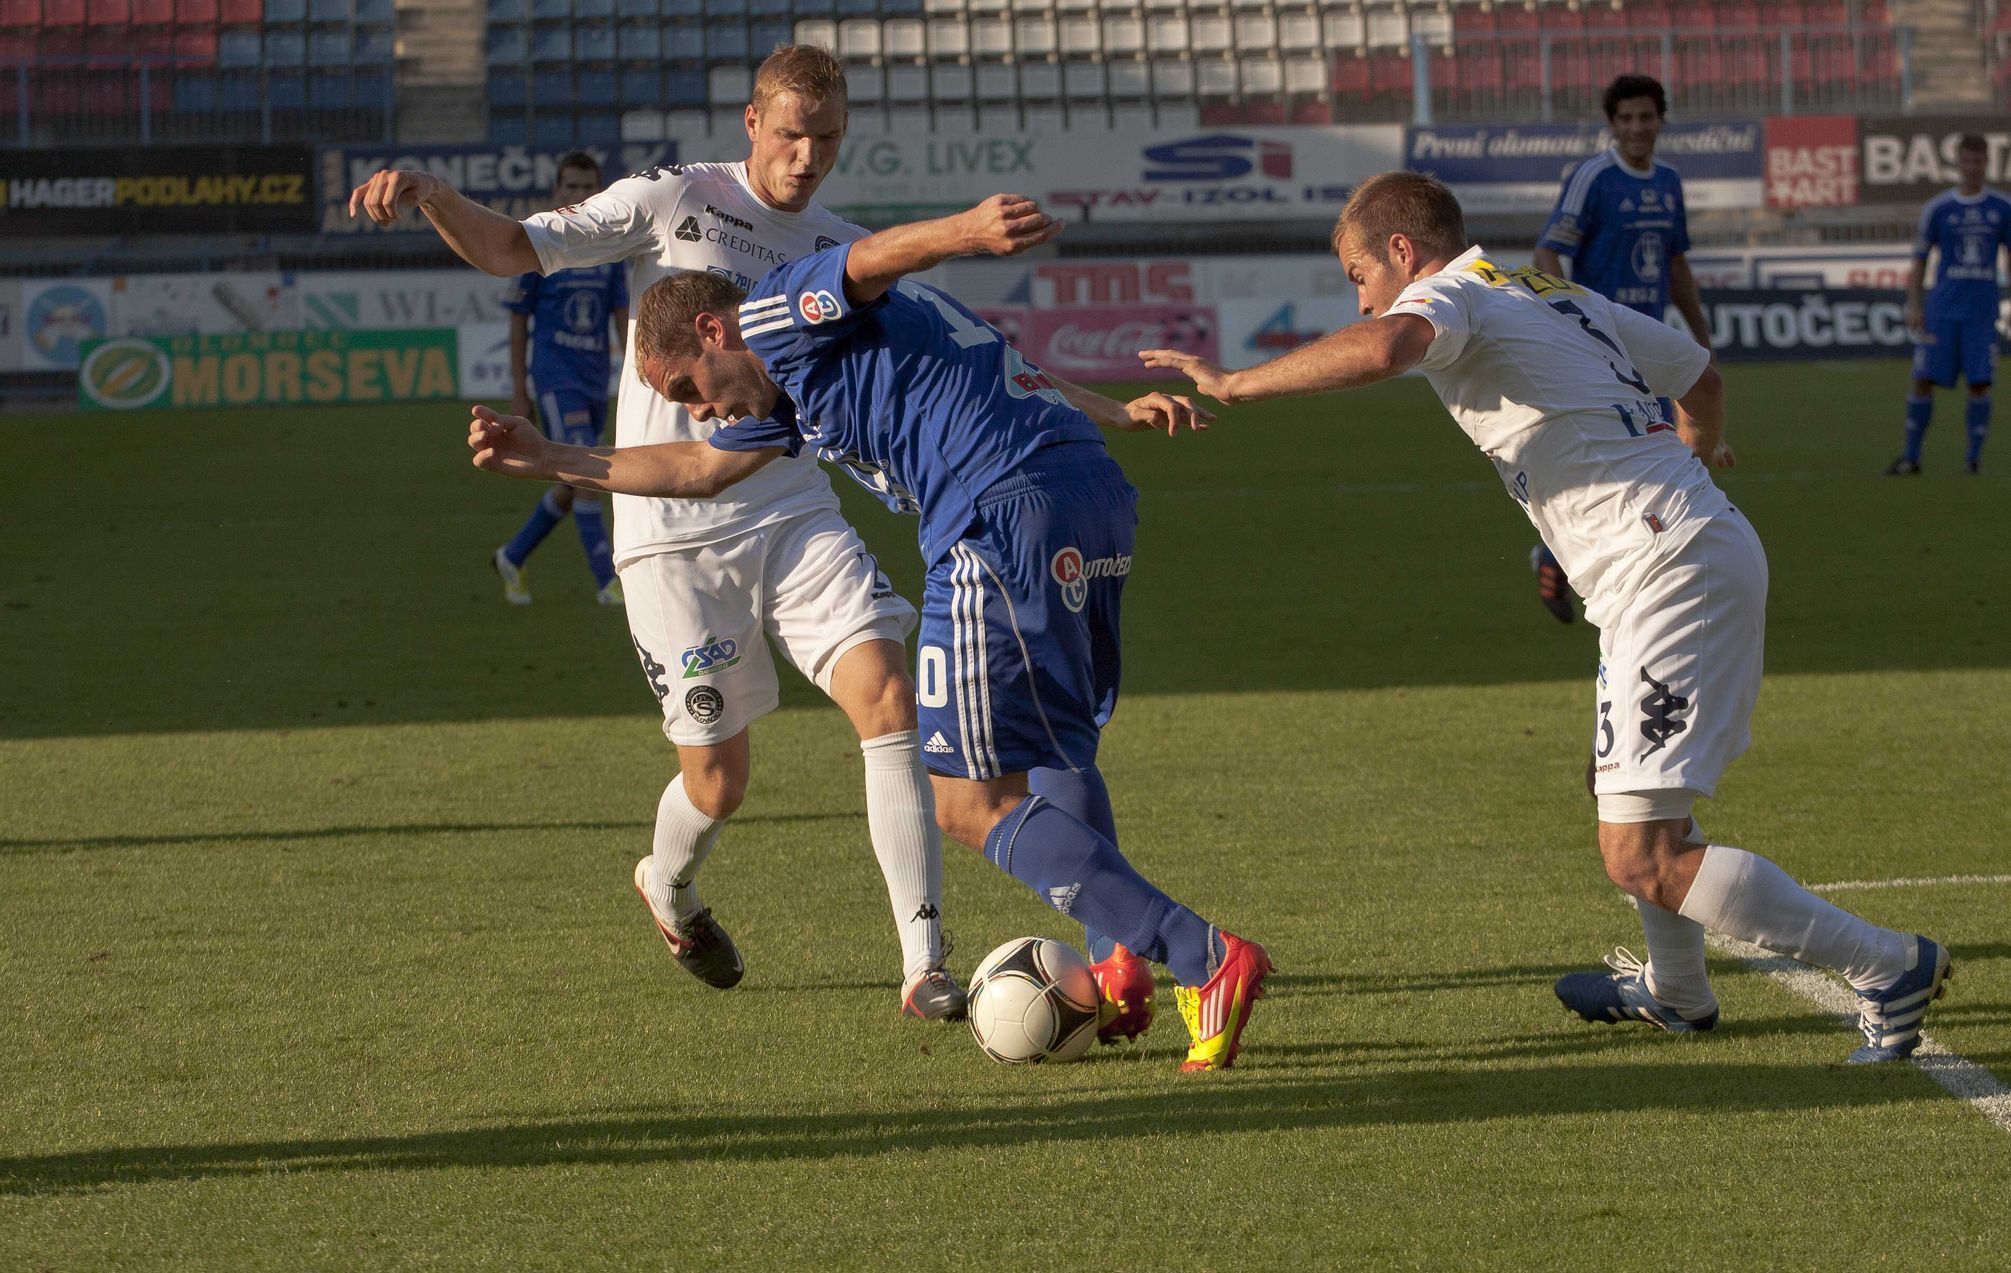 Olomoucký fotbalista Michal Hubník uniká s míčem před slováckým Lukášem Kubáněm (vpravo) v utkání 2. kola Gambrinus ligy.